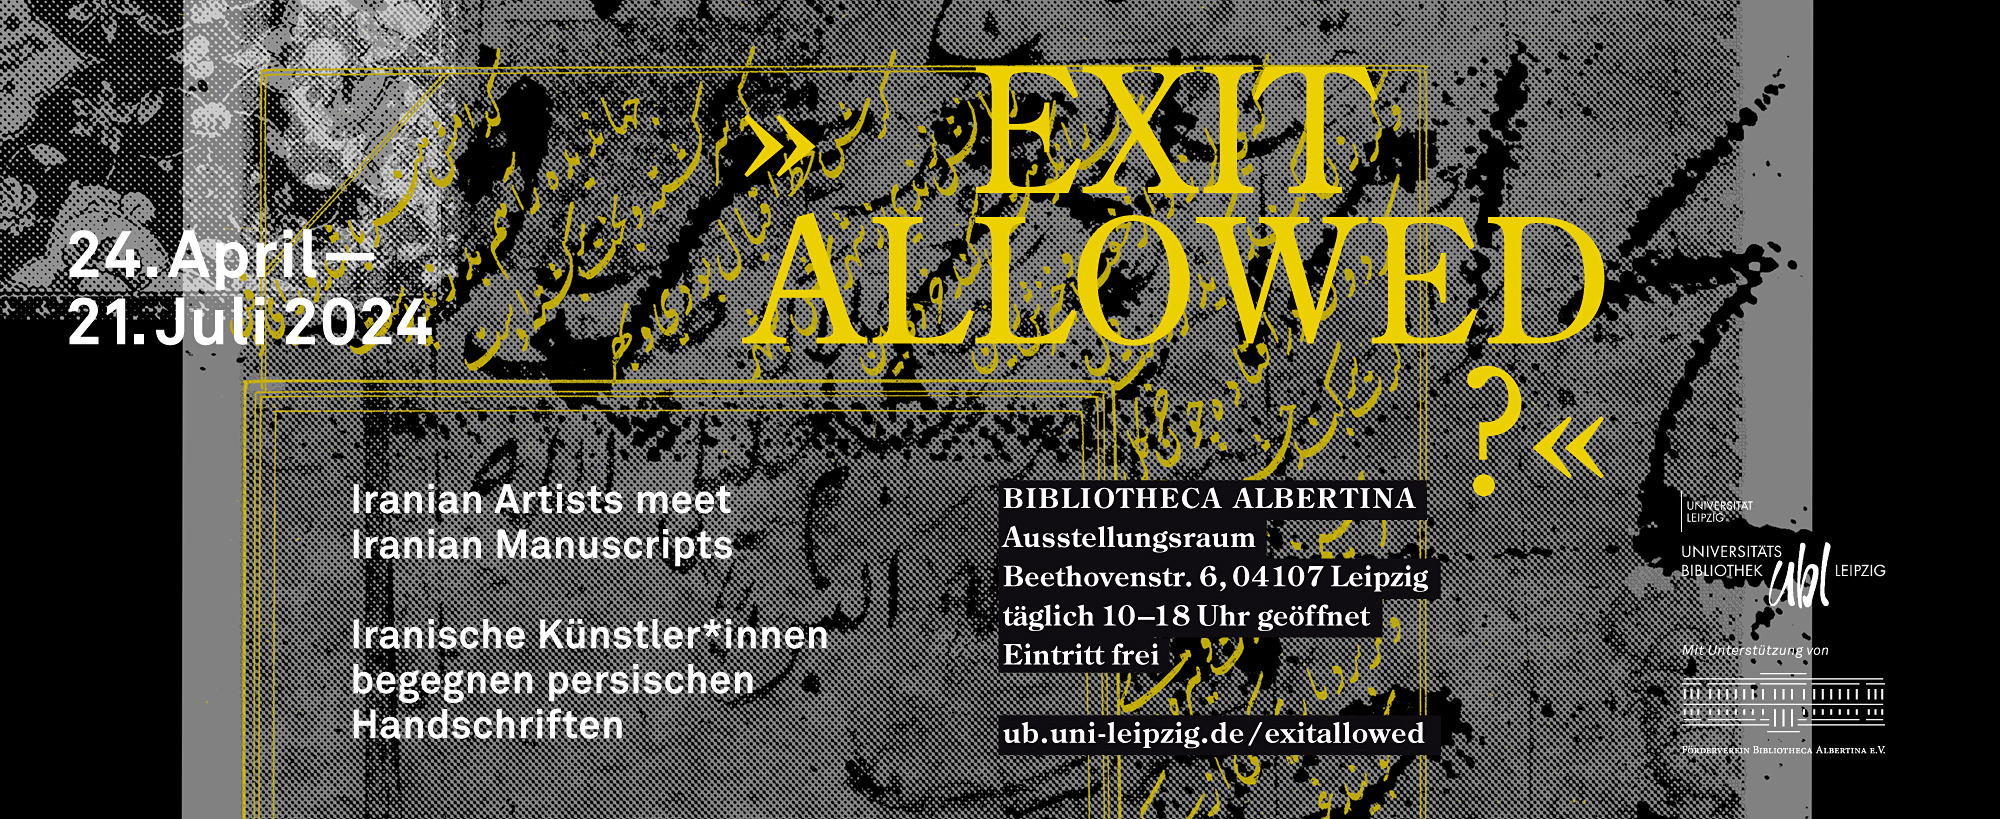 Aktuelle Ausstellung in der Bibliotheca Albertina